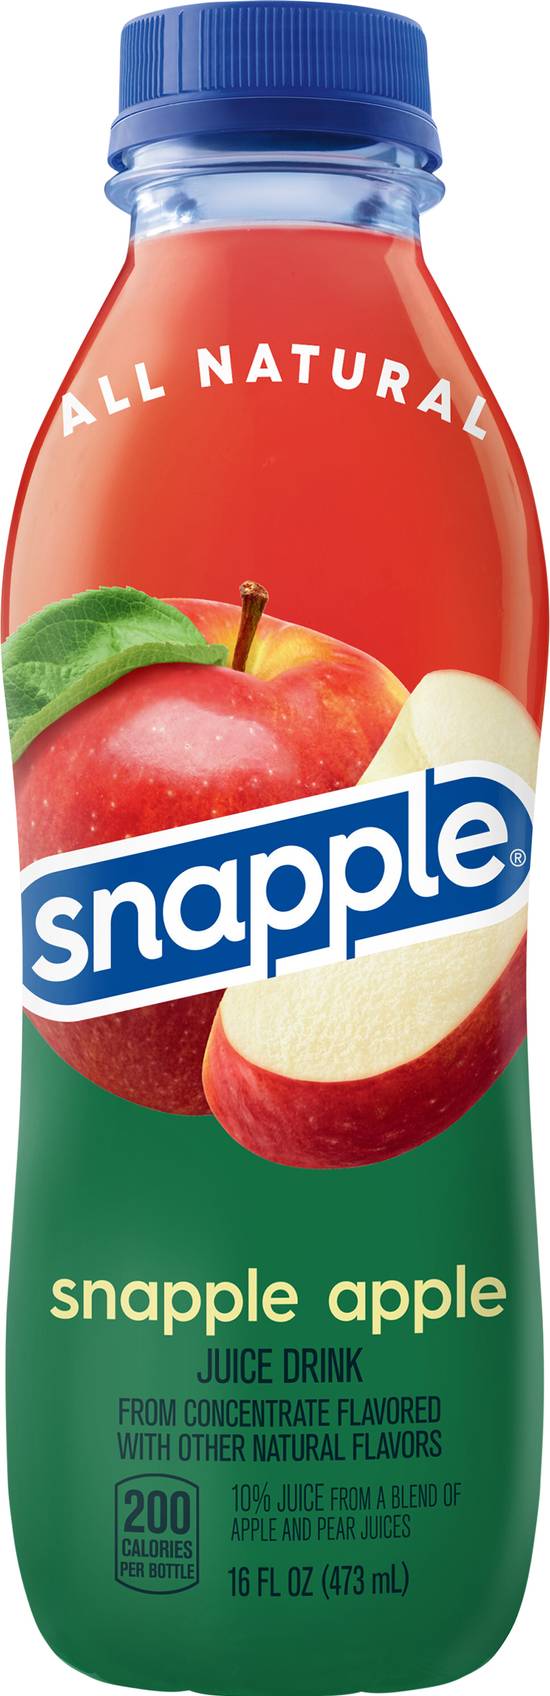 Snapple Apple Juice Drink (16 fl oz)